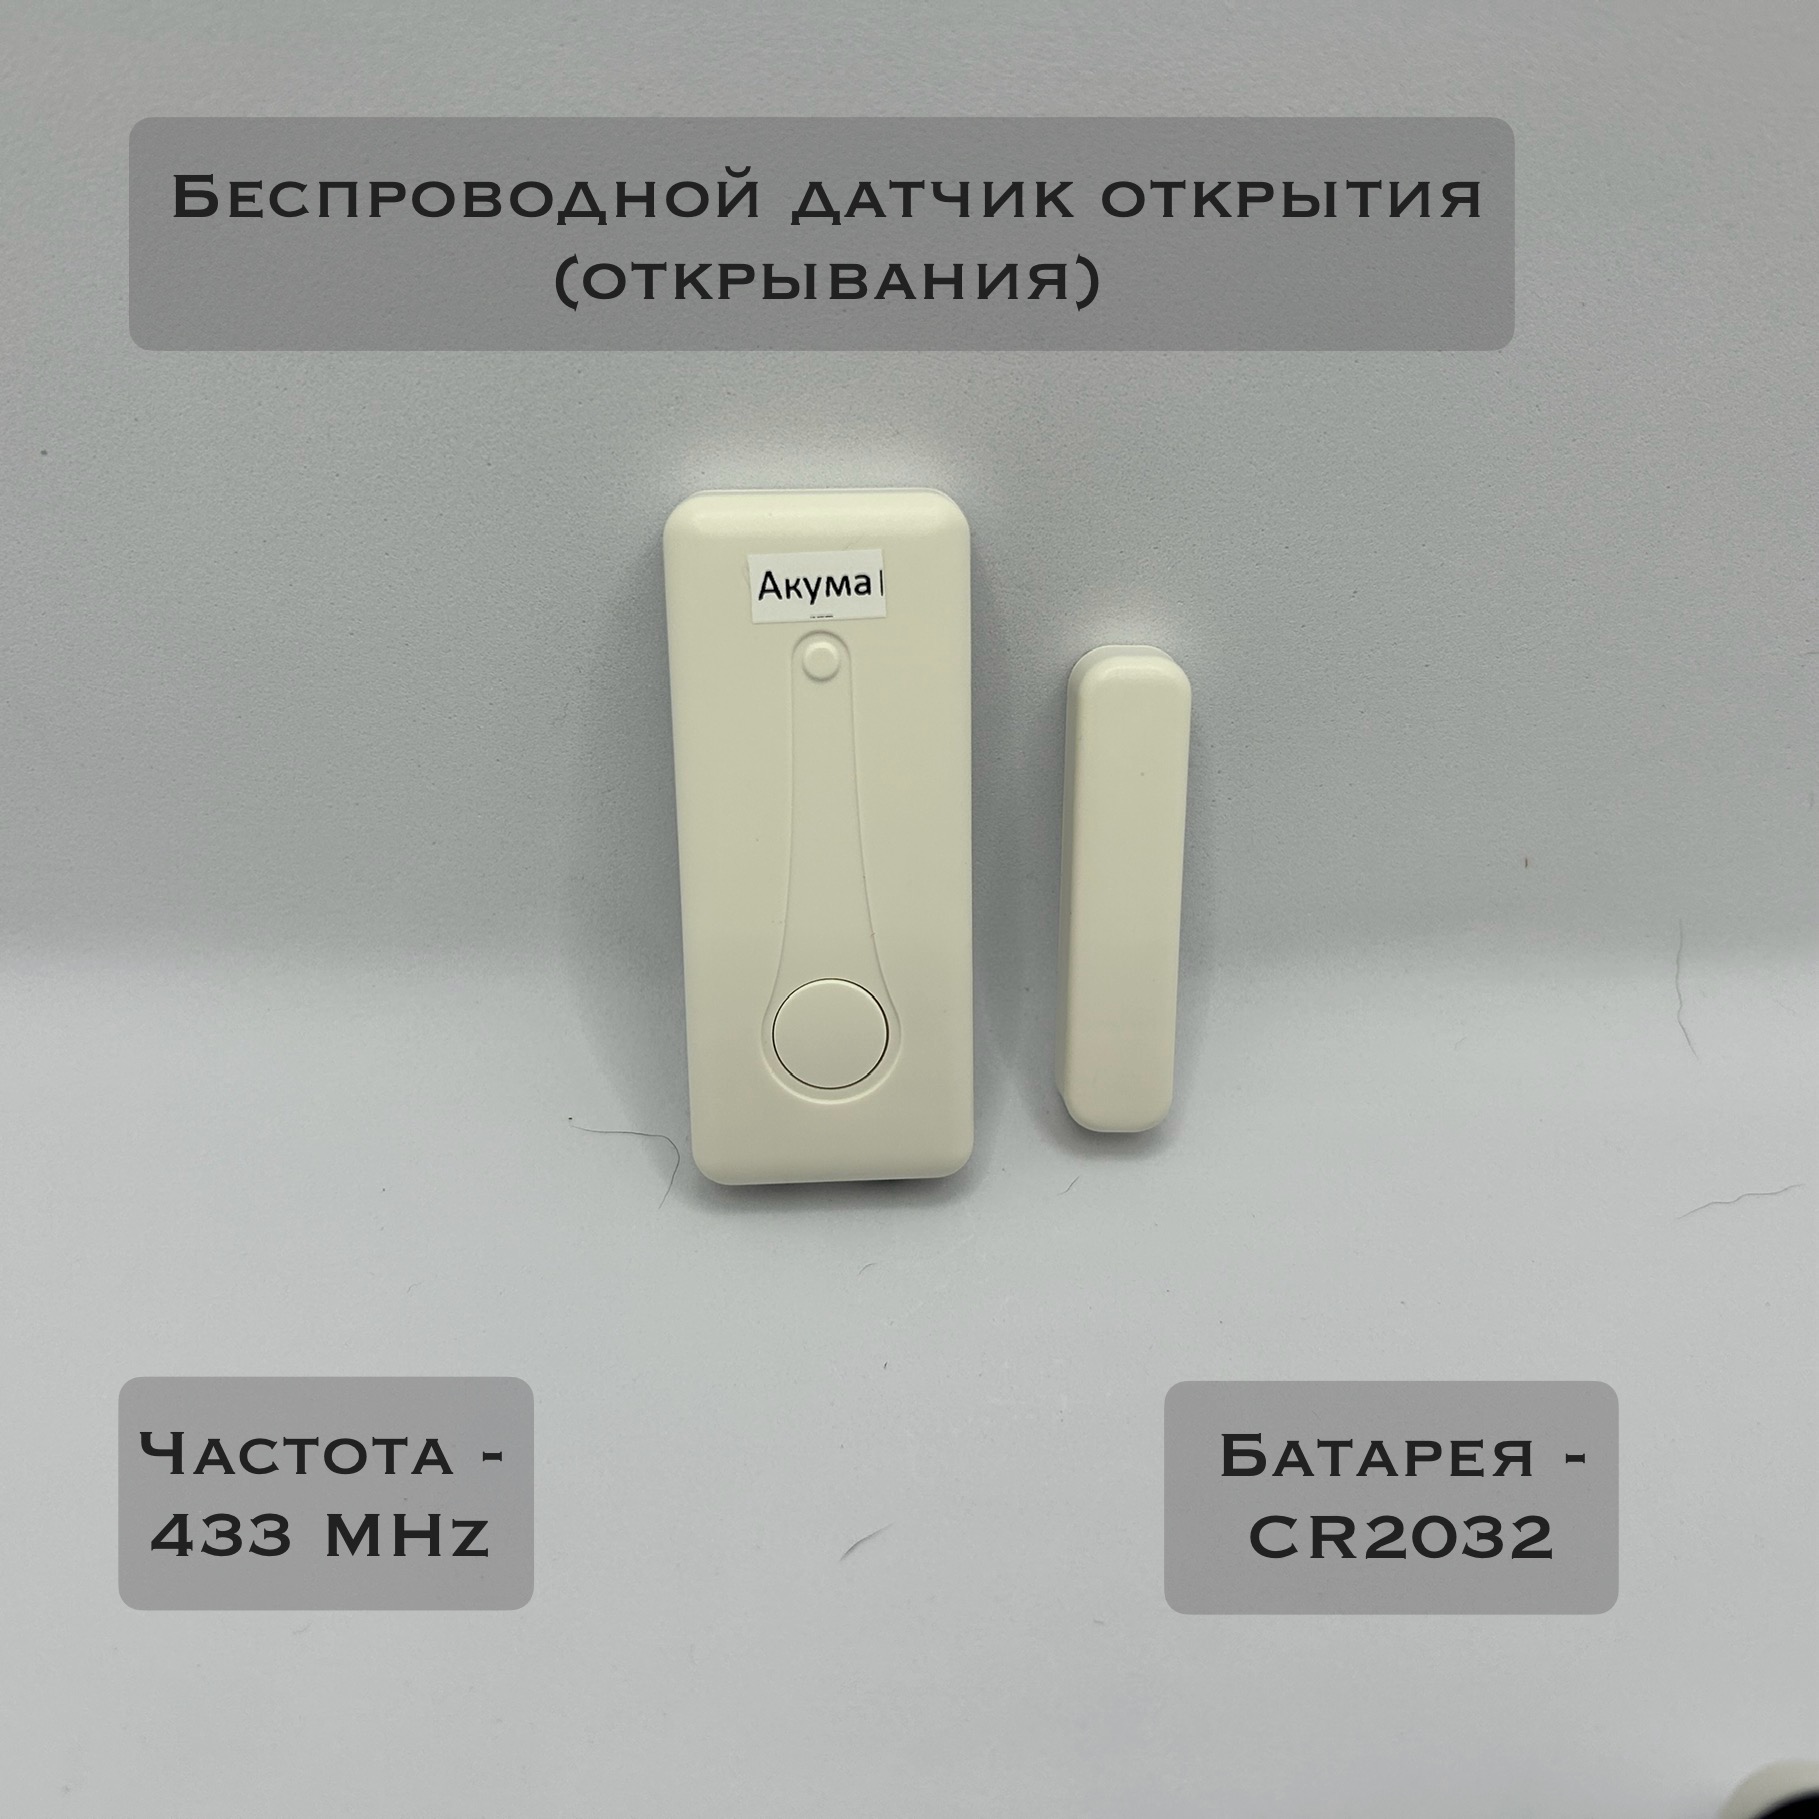 Датчик открытия для охранной системы Акума БДО-003 (беспроводной) датчик открытия окон дверей для охранной сигнализации kerui w181 белый